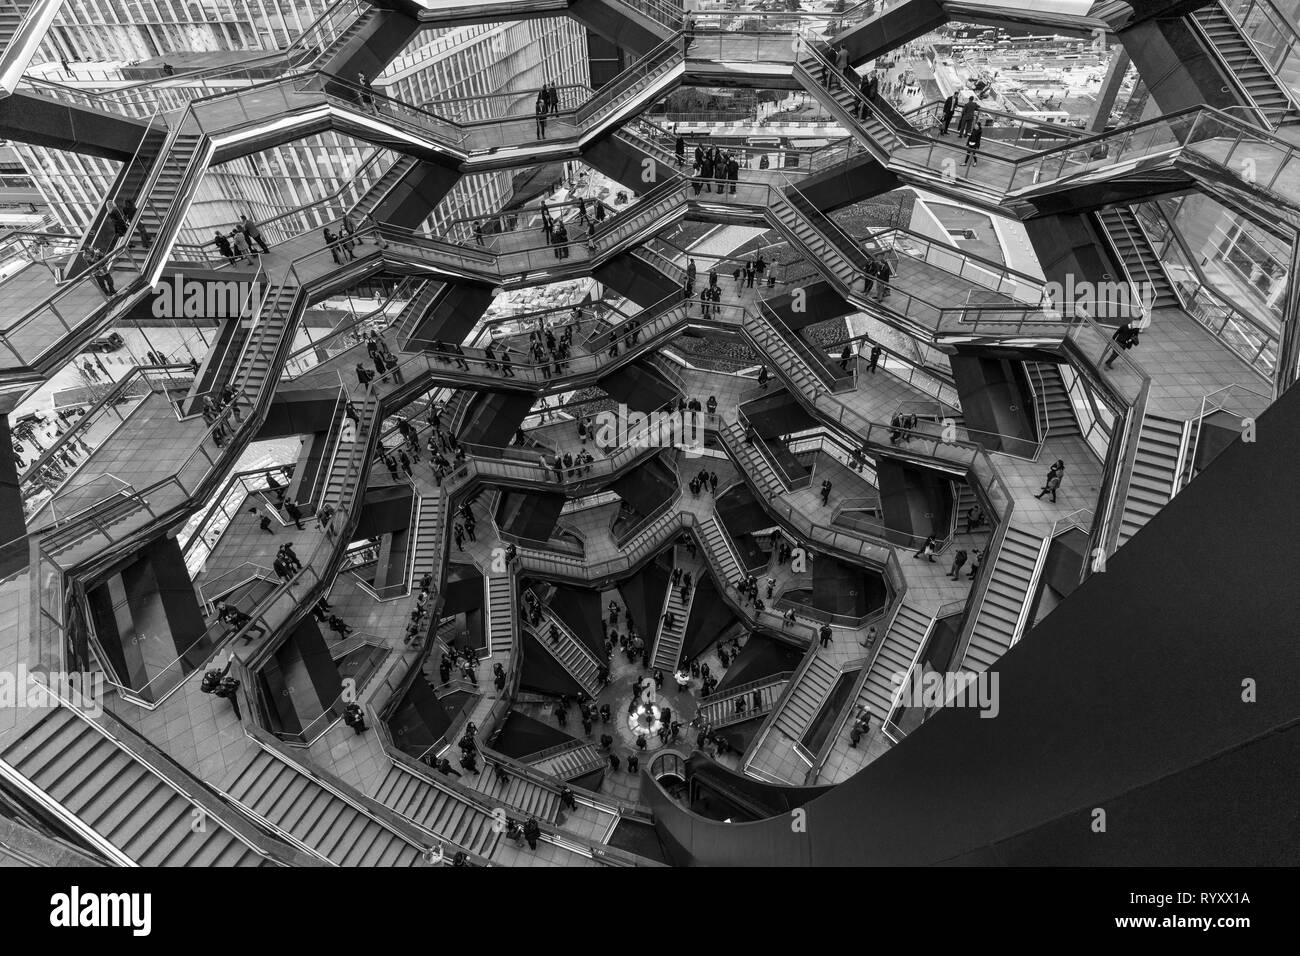 New York, NY - 15. März 2019: Hudson Yards ist lagest private Entwicklung in New York. Blick auf das Schiff, bestehend aus 155 Treppen am Hudson Yards von Manhattan während öffnung Tag Credit: Lev radin/Alamy leben Nachrichten Stockfoto